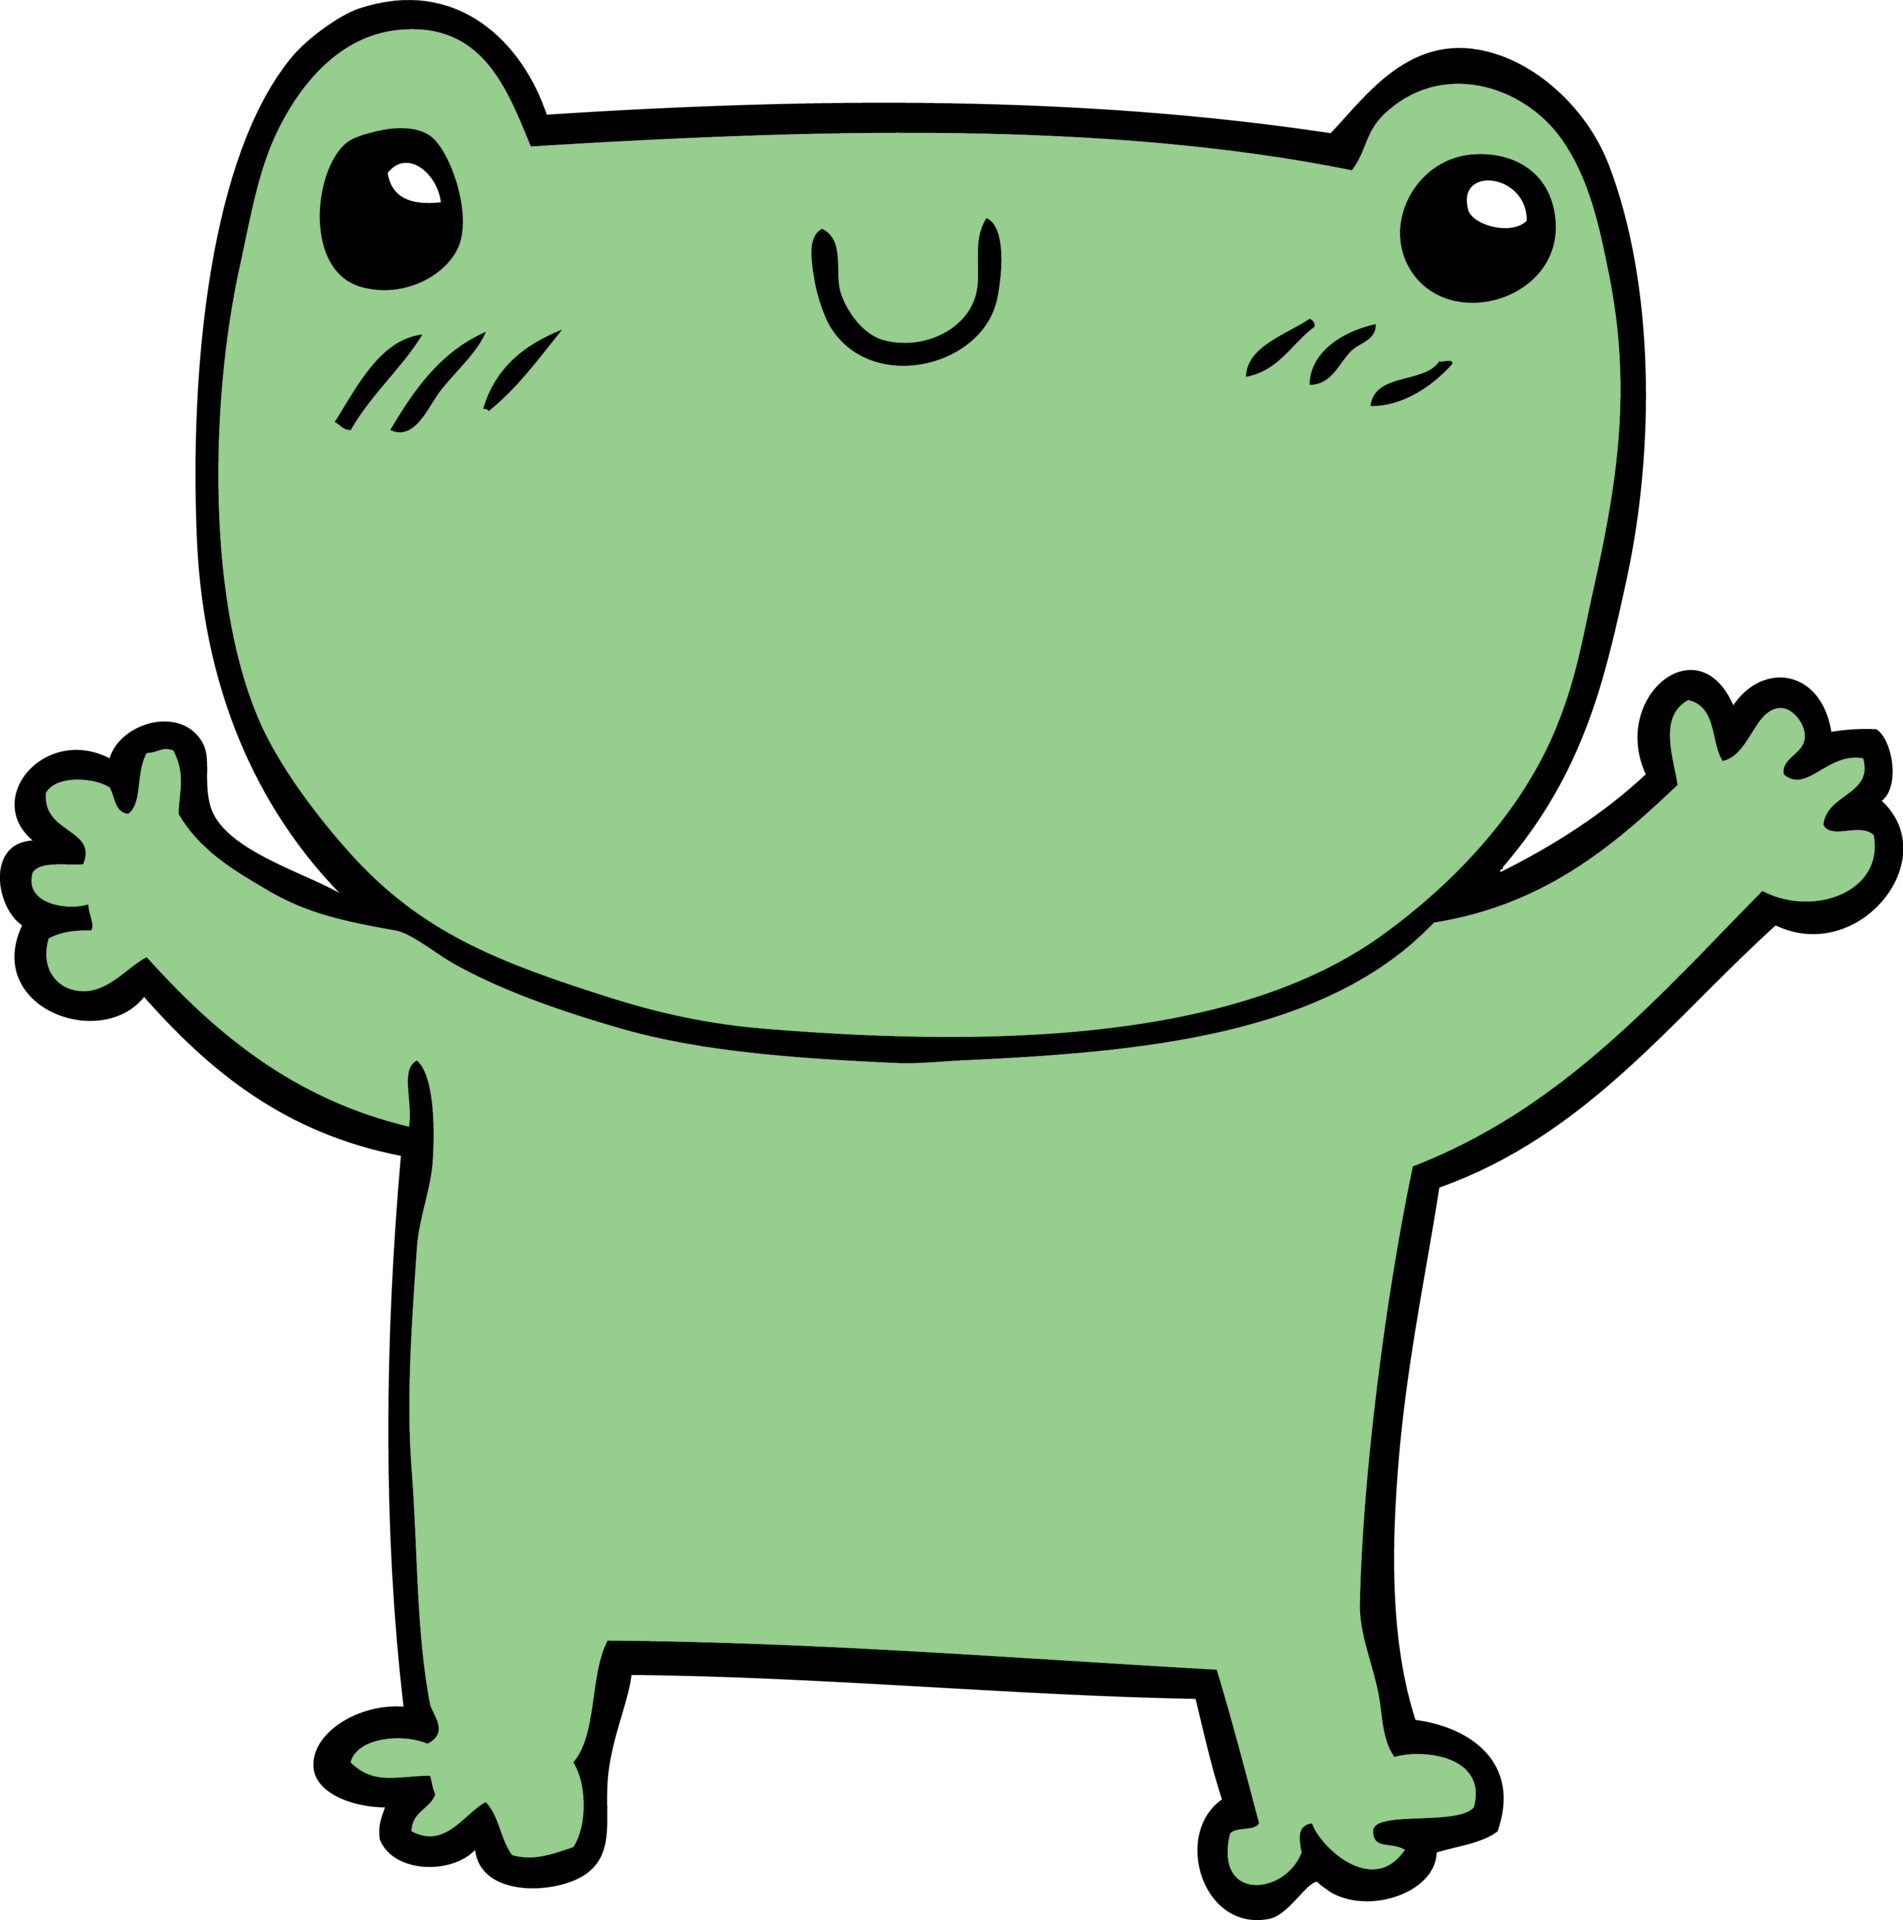 doodle character cartoon frog 13017006 Vector Art at Vecteezy